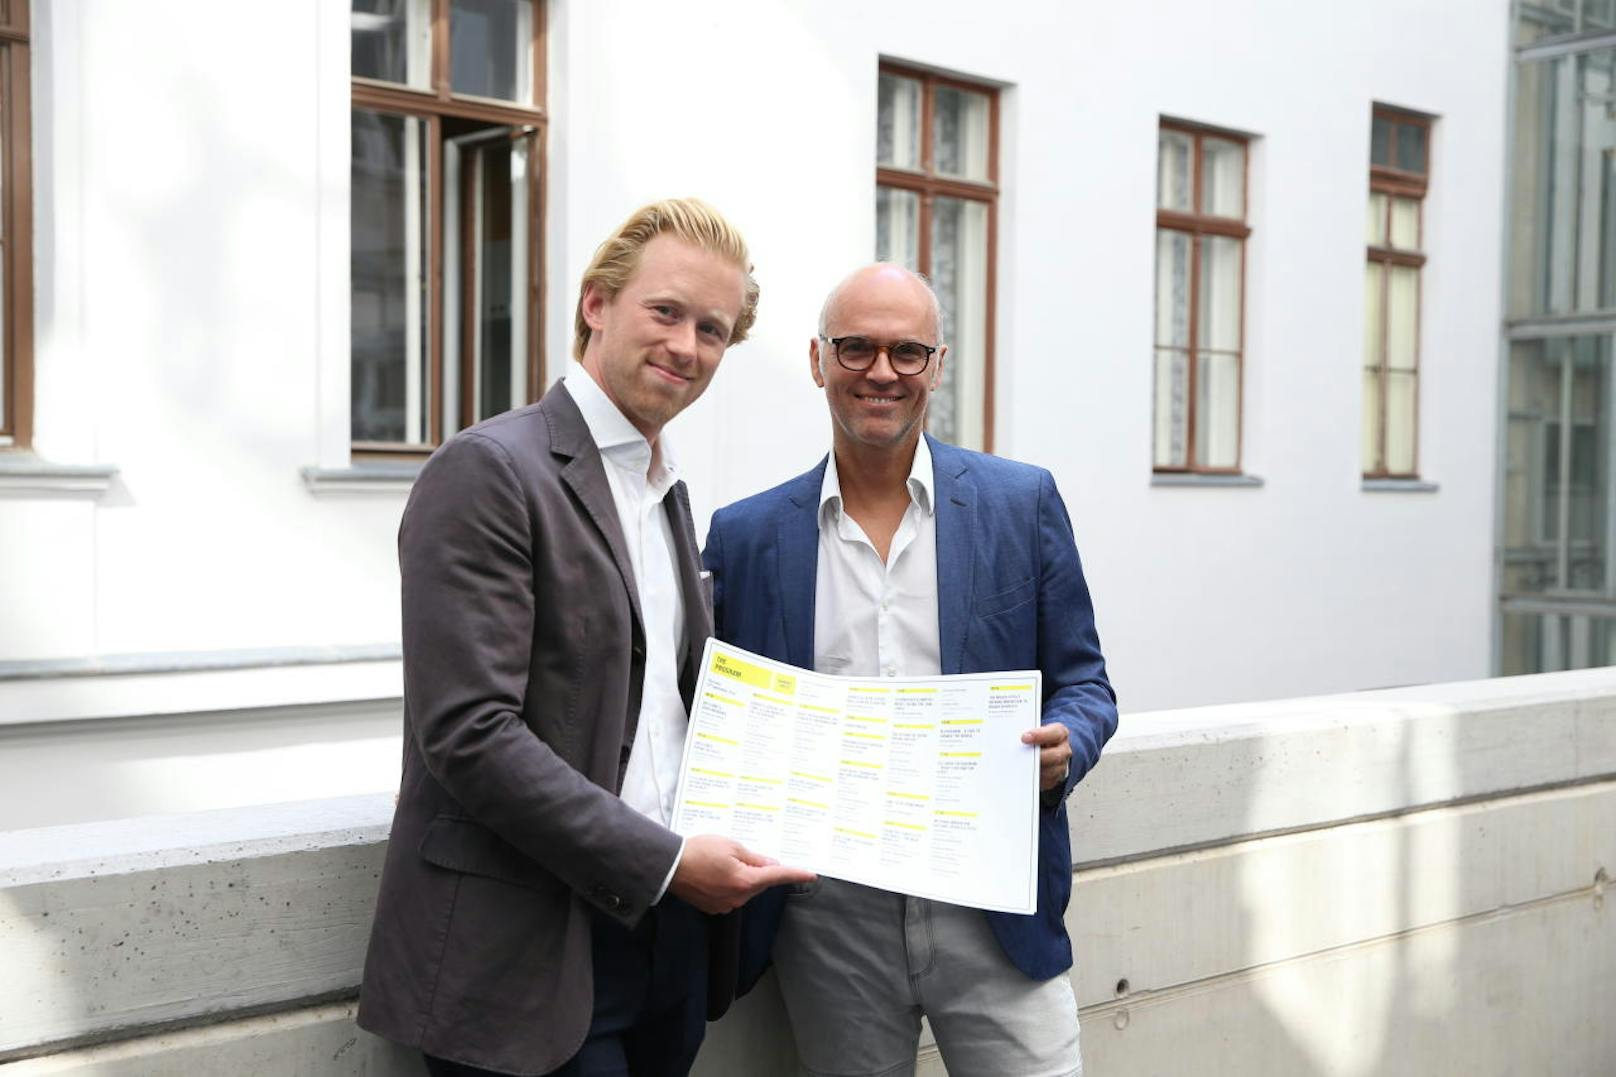 Niko Pelinka und Rudi Kobza bringen 50 internationale Spitzenmanager zur Konferenz "Dawin's Circle" nach Wien.